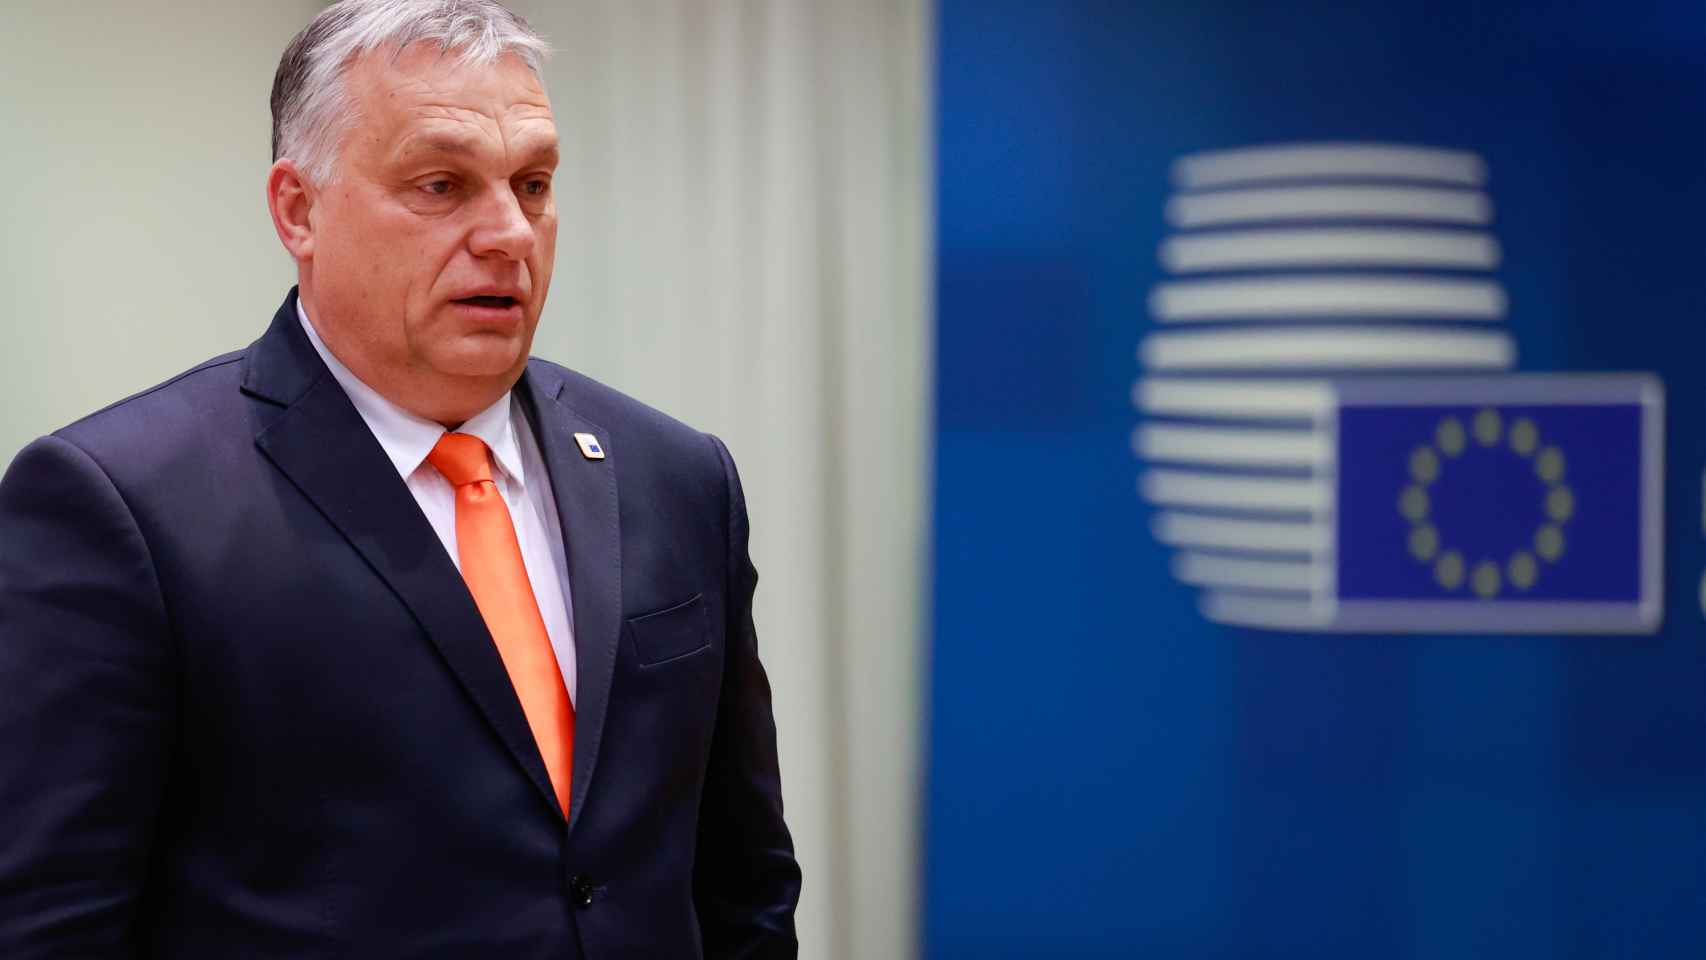 El húngaro Orbán amenaza con vetar el embargo petrolero de la UE contra Rusia